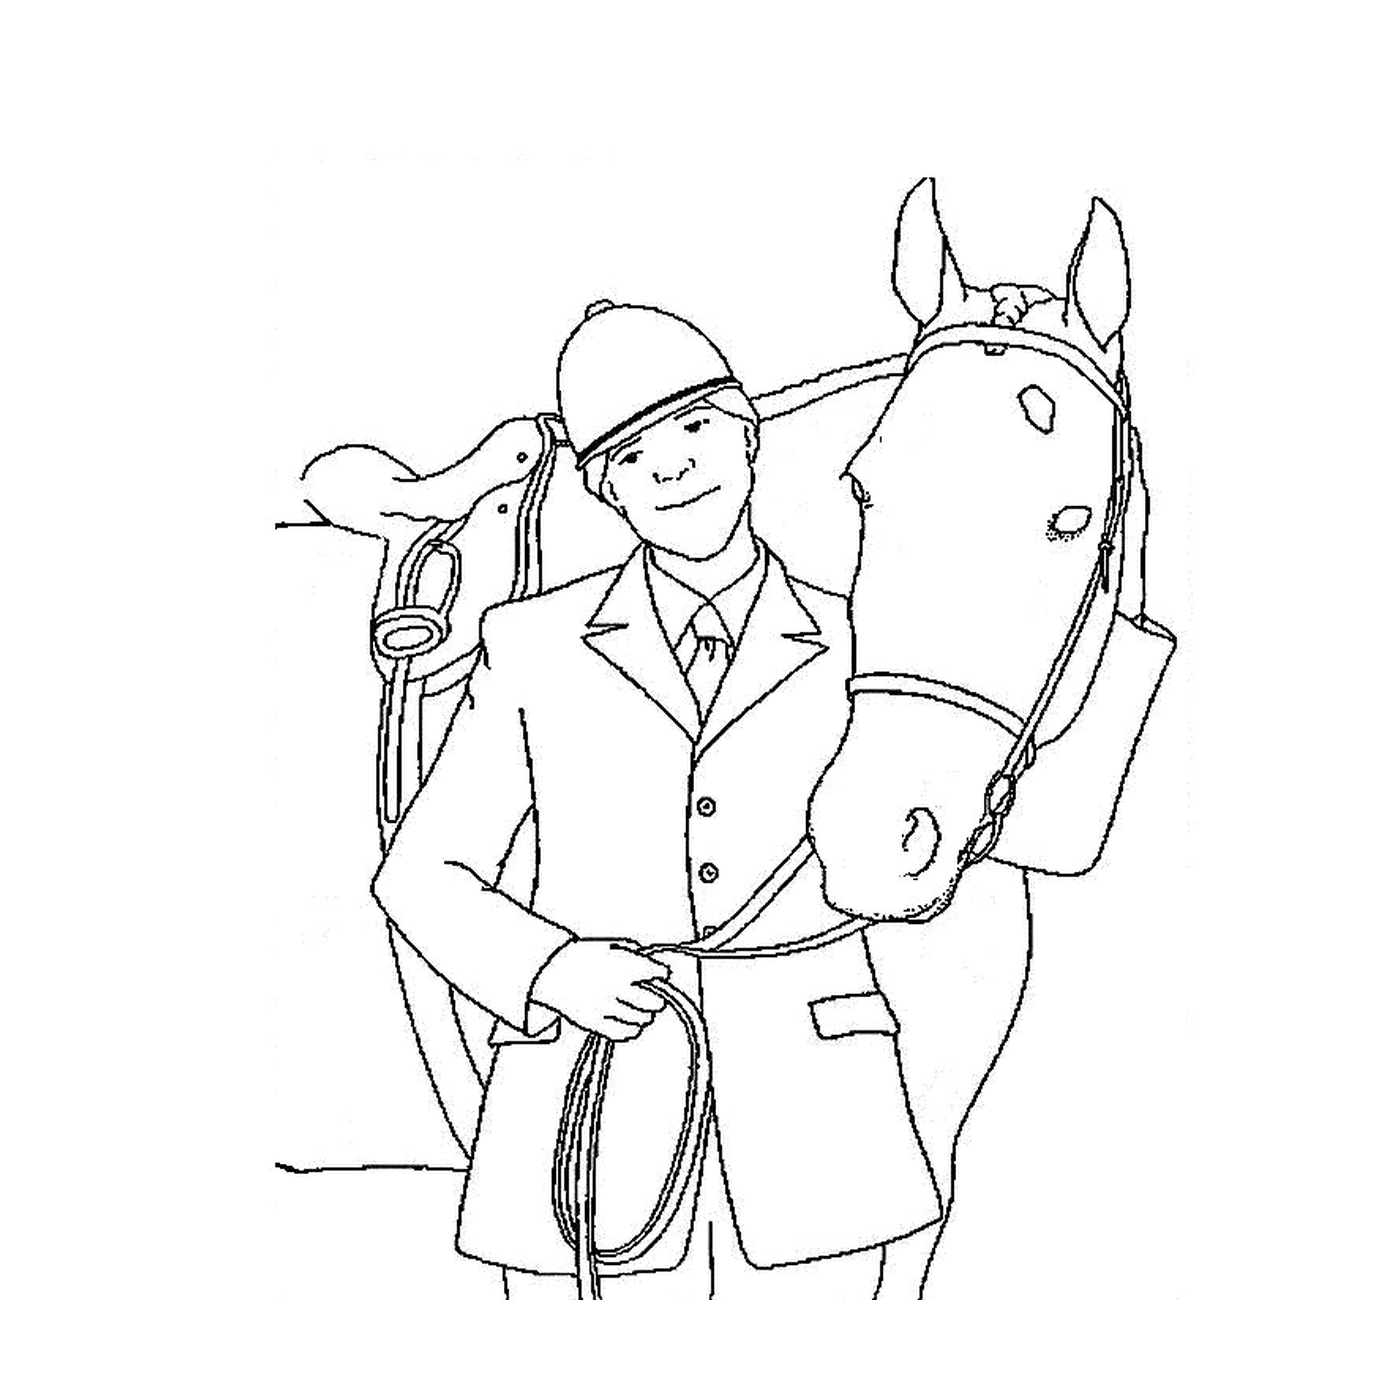  Reiter - Ein Mann und ein Pferd 